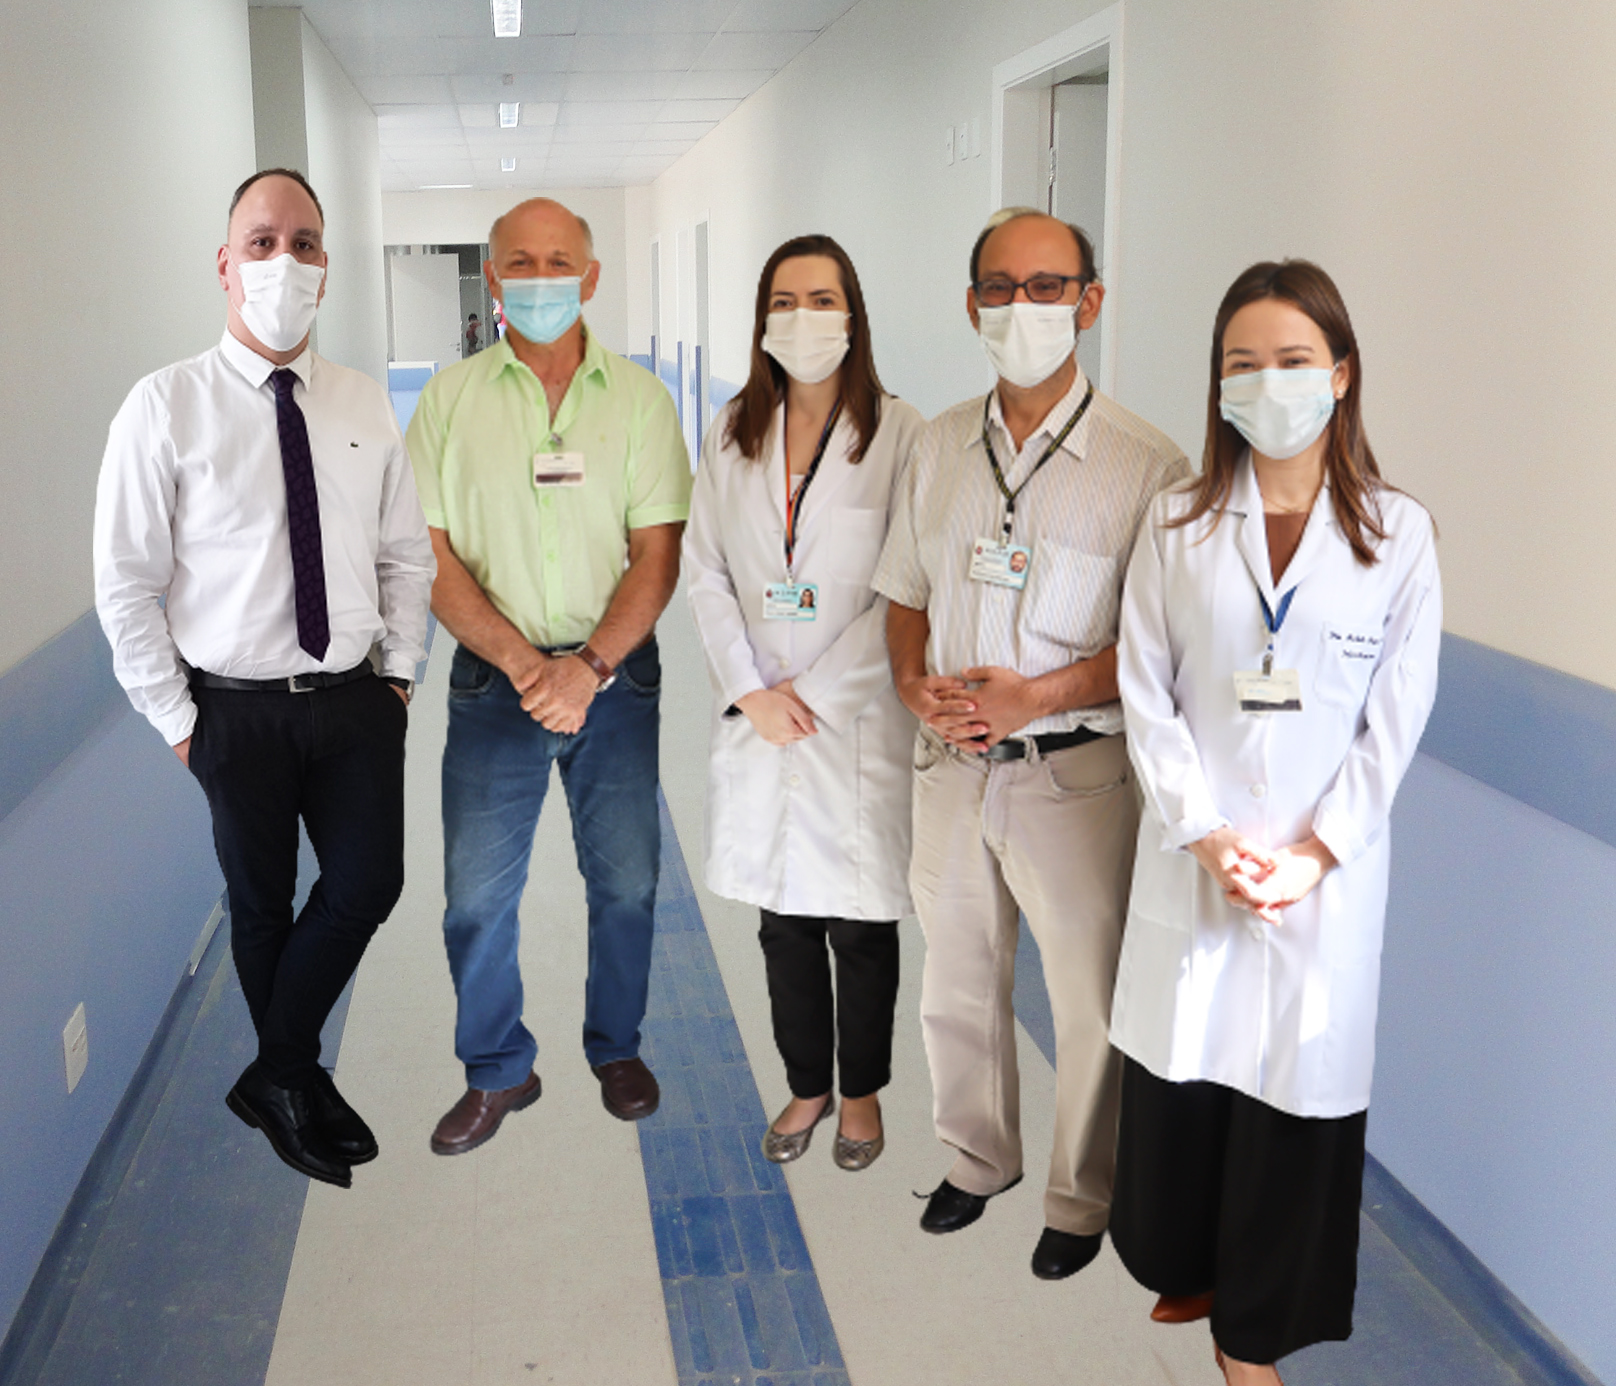 Foto com a equipe de infectologistas do hospital, formada por três homens e duas mulheres.